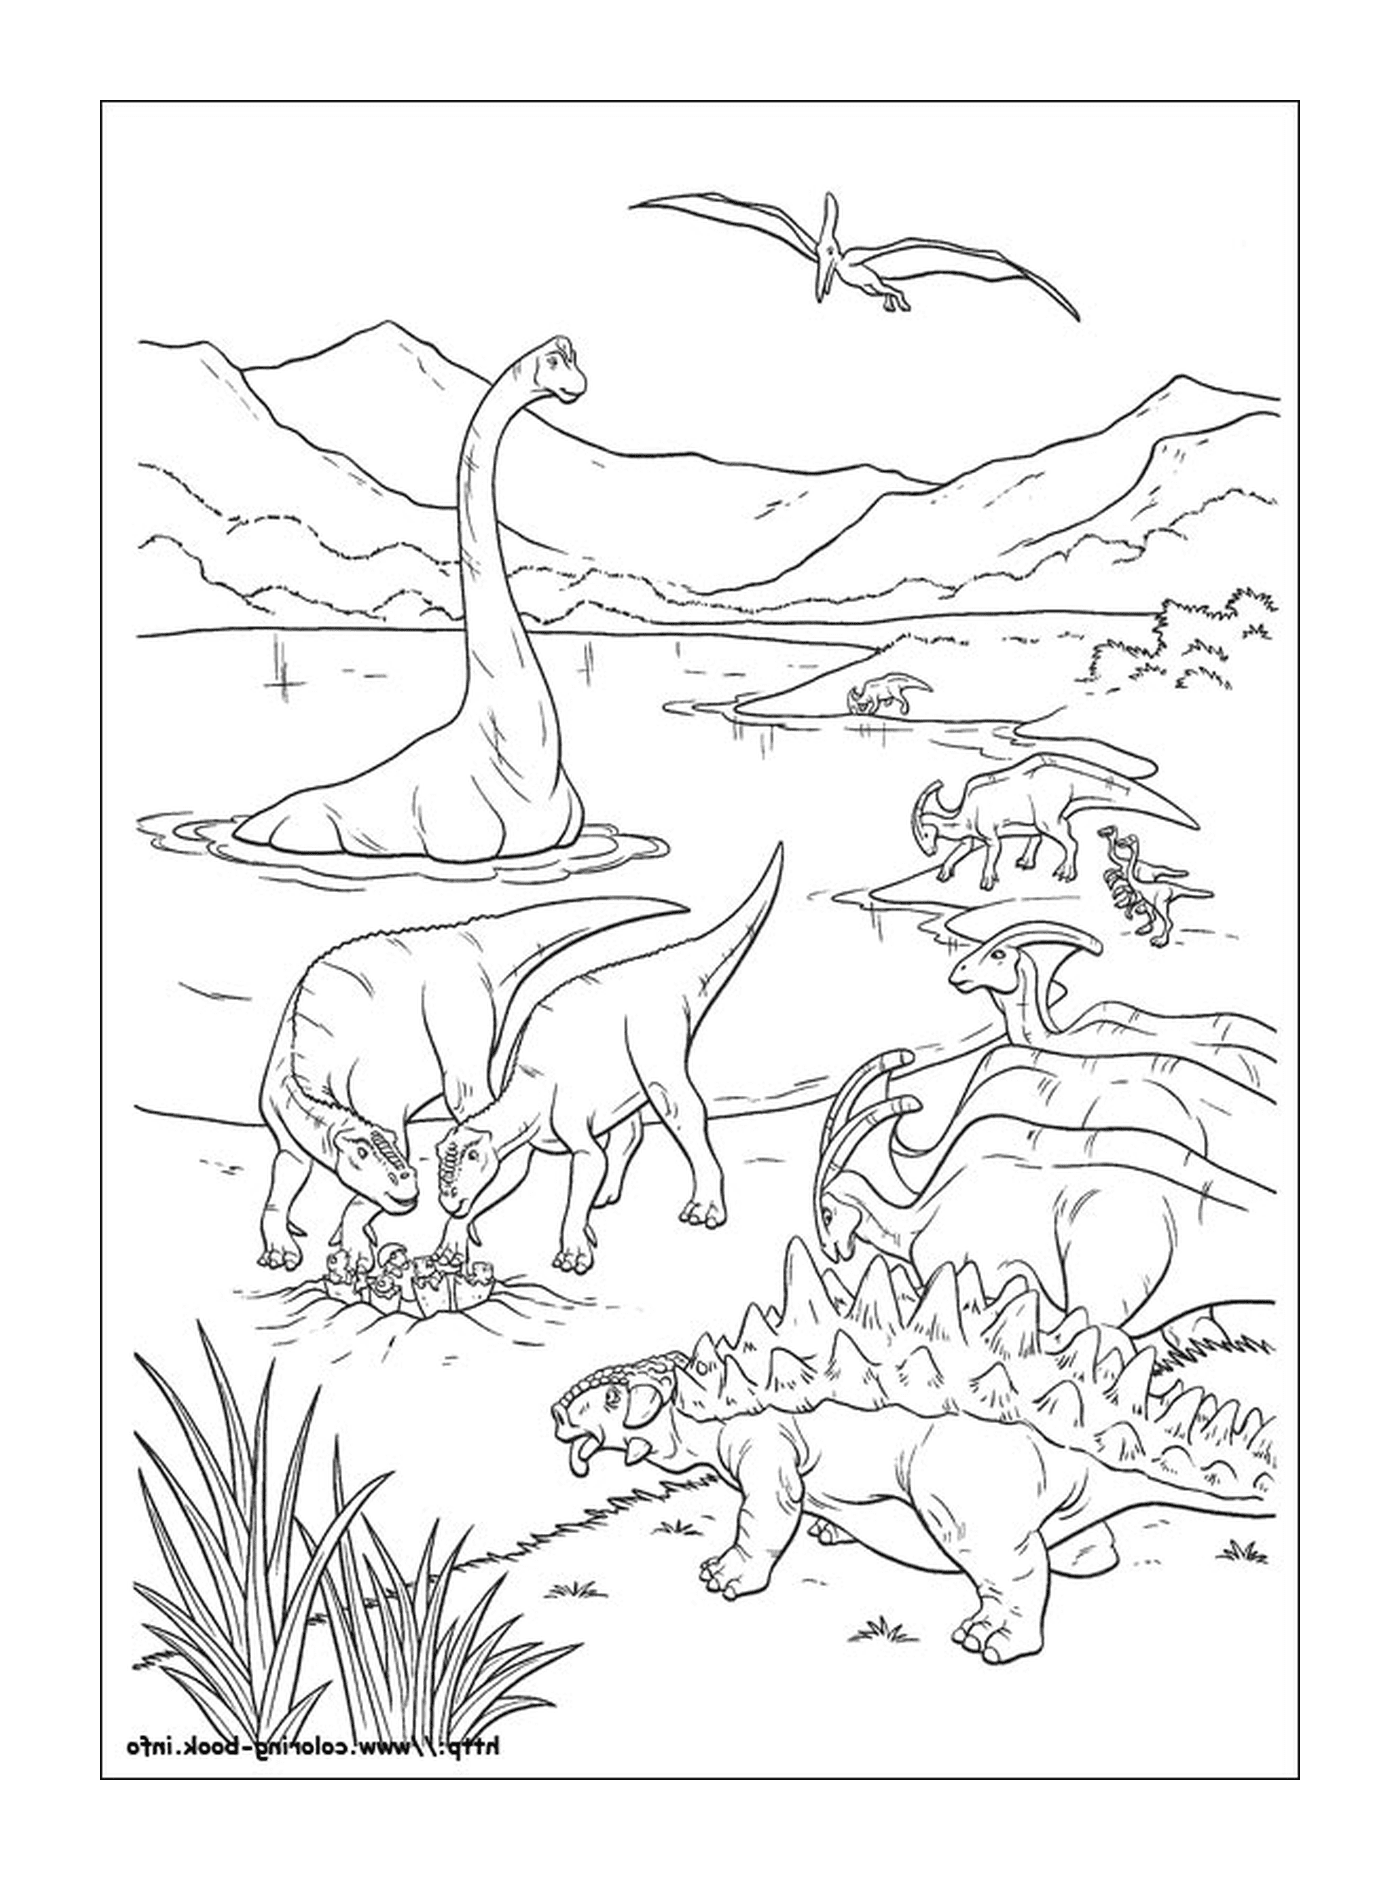  Um grupo de dinossauros na água 